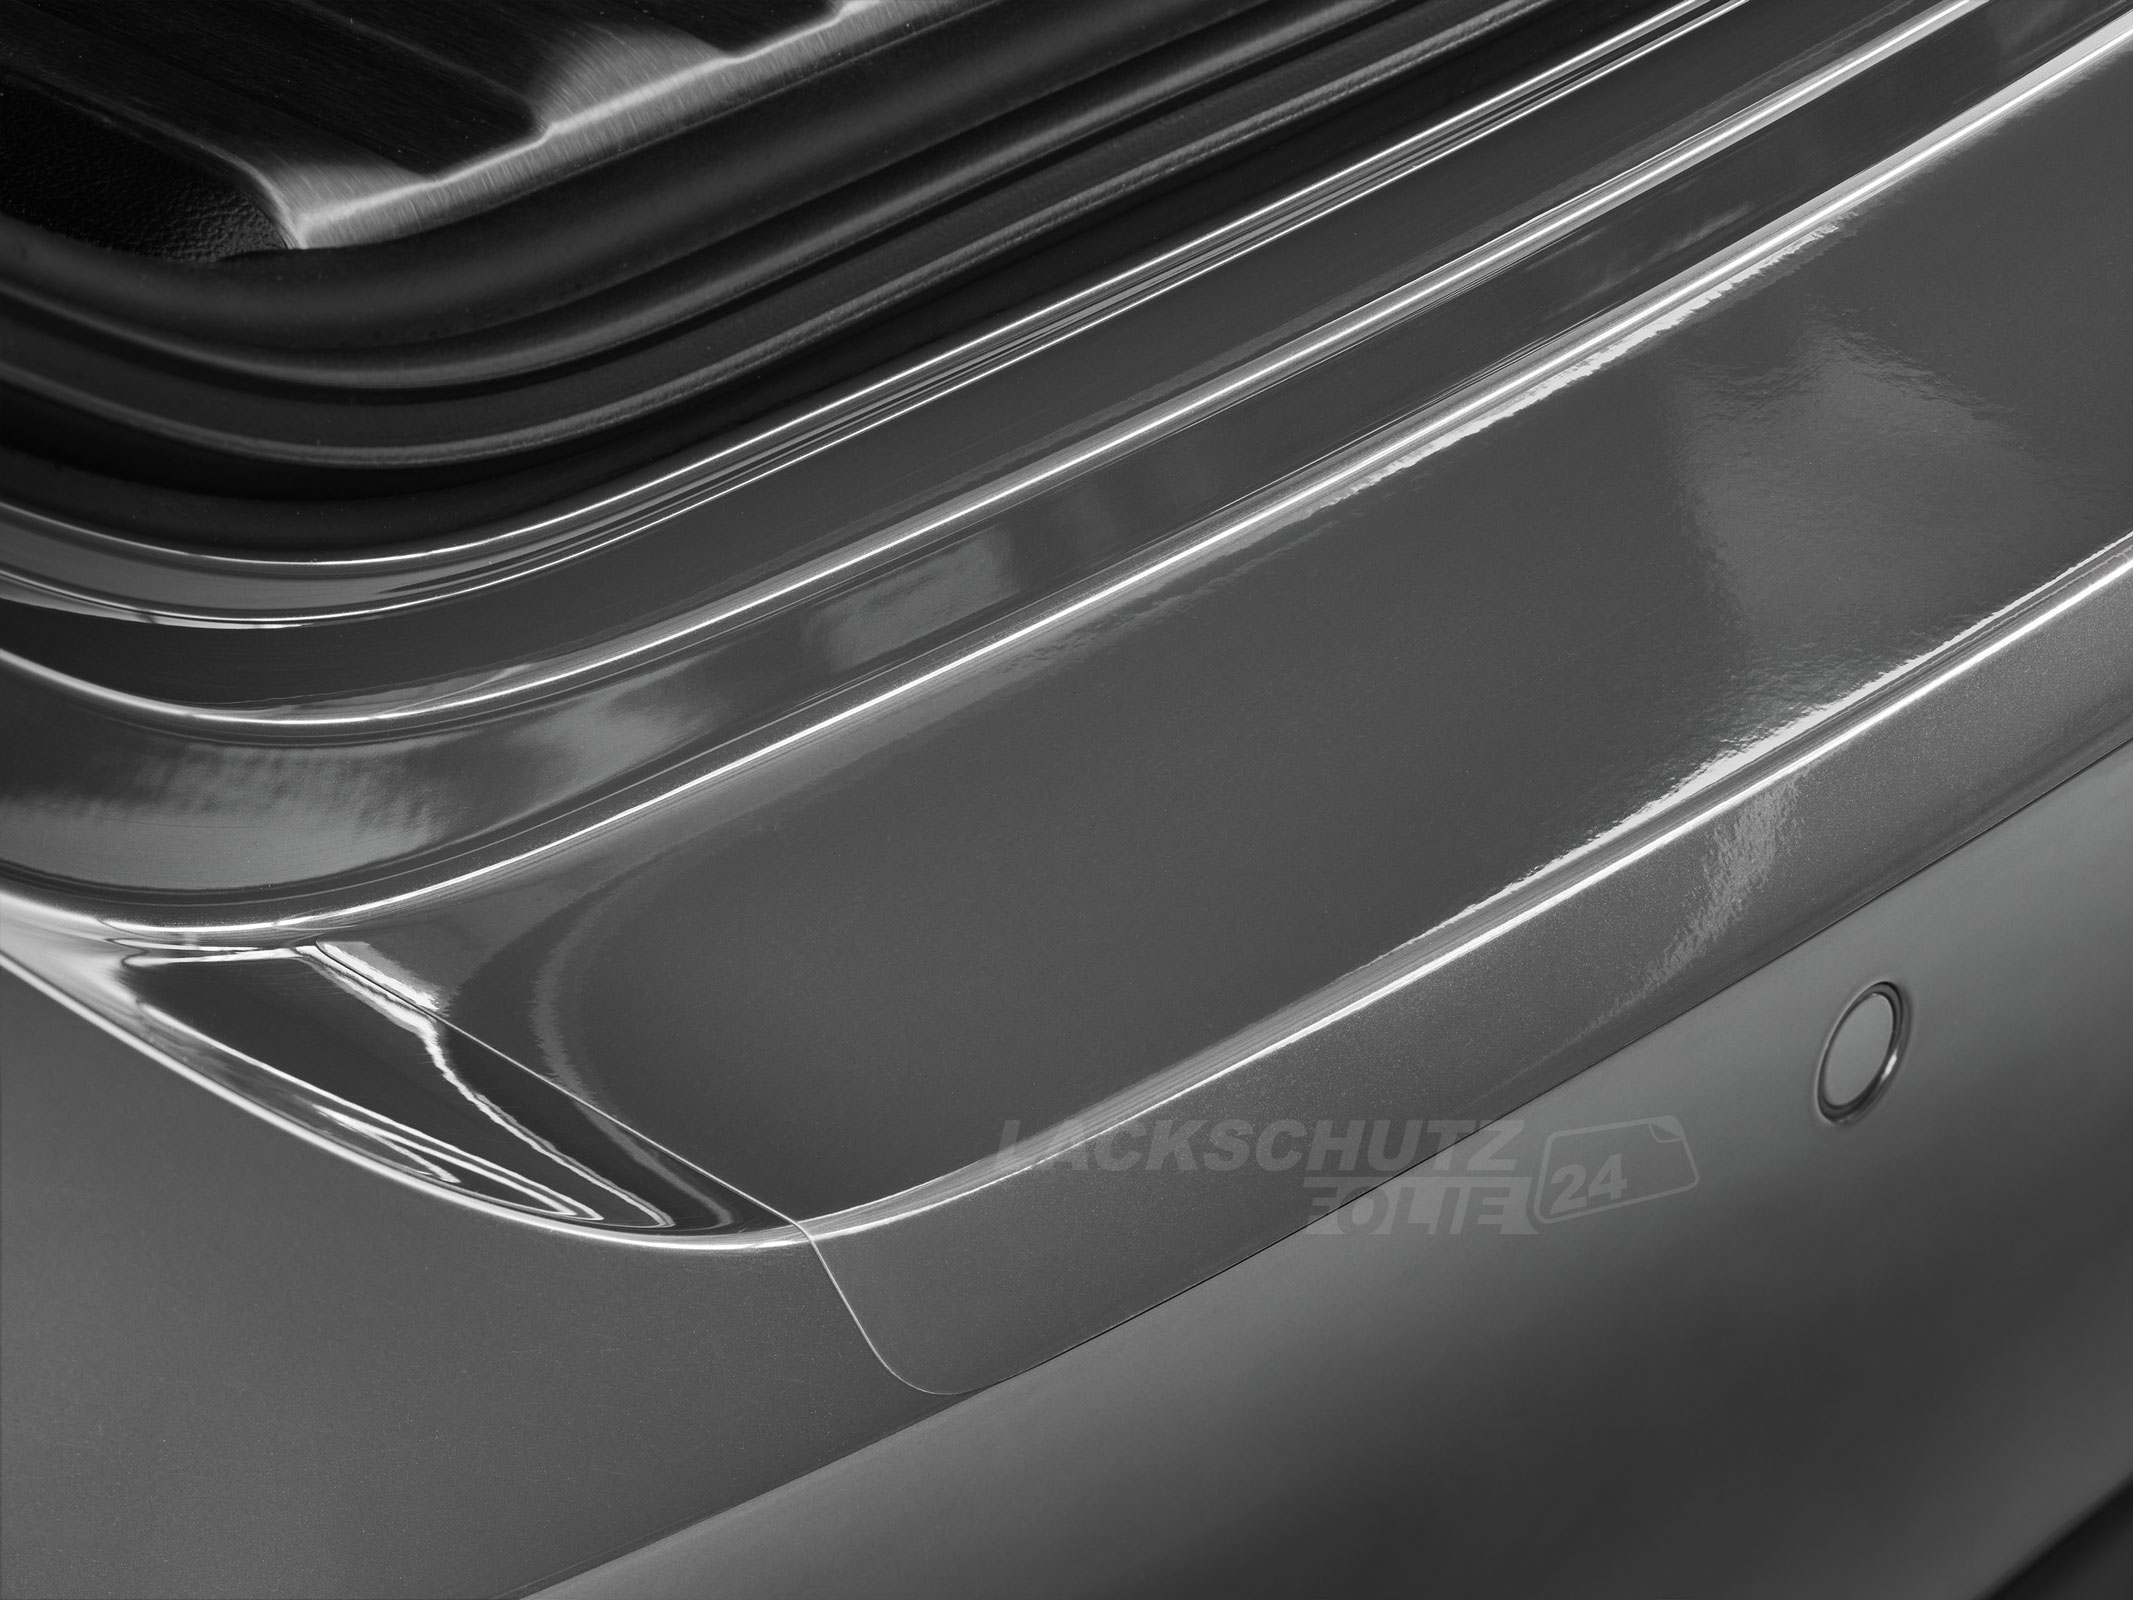 Ladekantenschutzfolie - Transparent Glatt Hochglänzend für Mitsubishi ASX 3. Facelift, ab BJ 03/2019